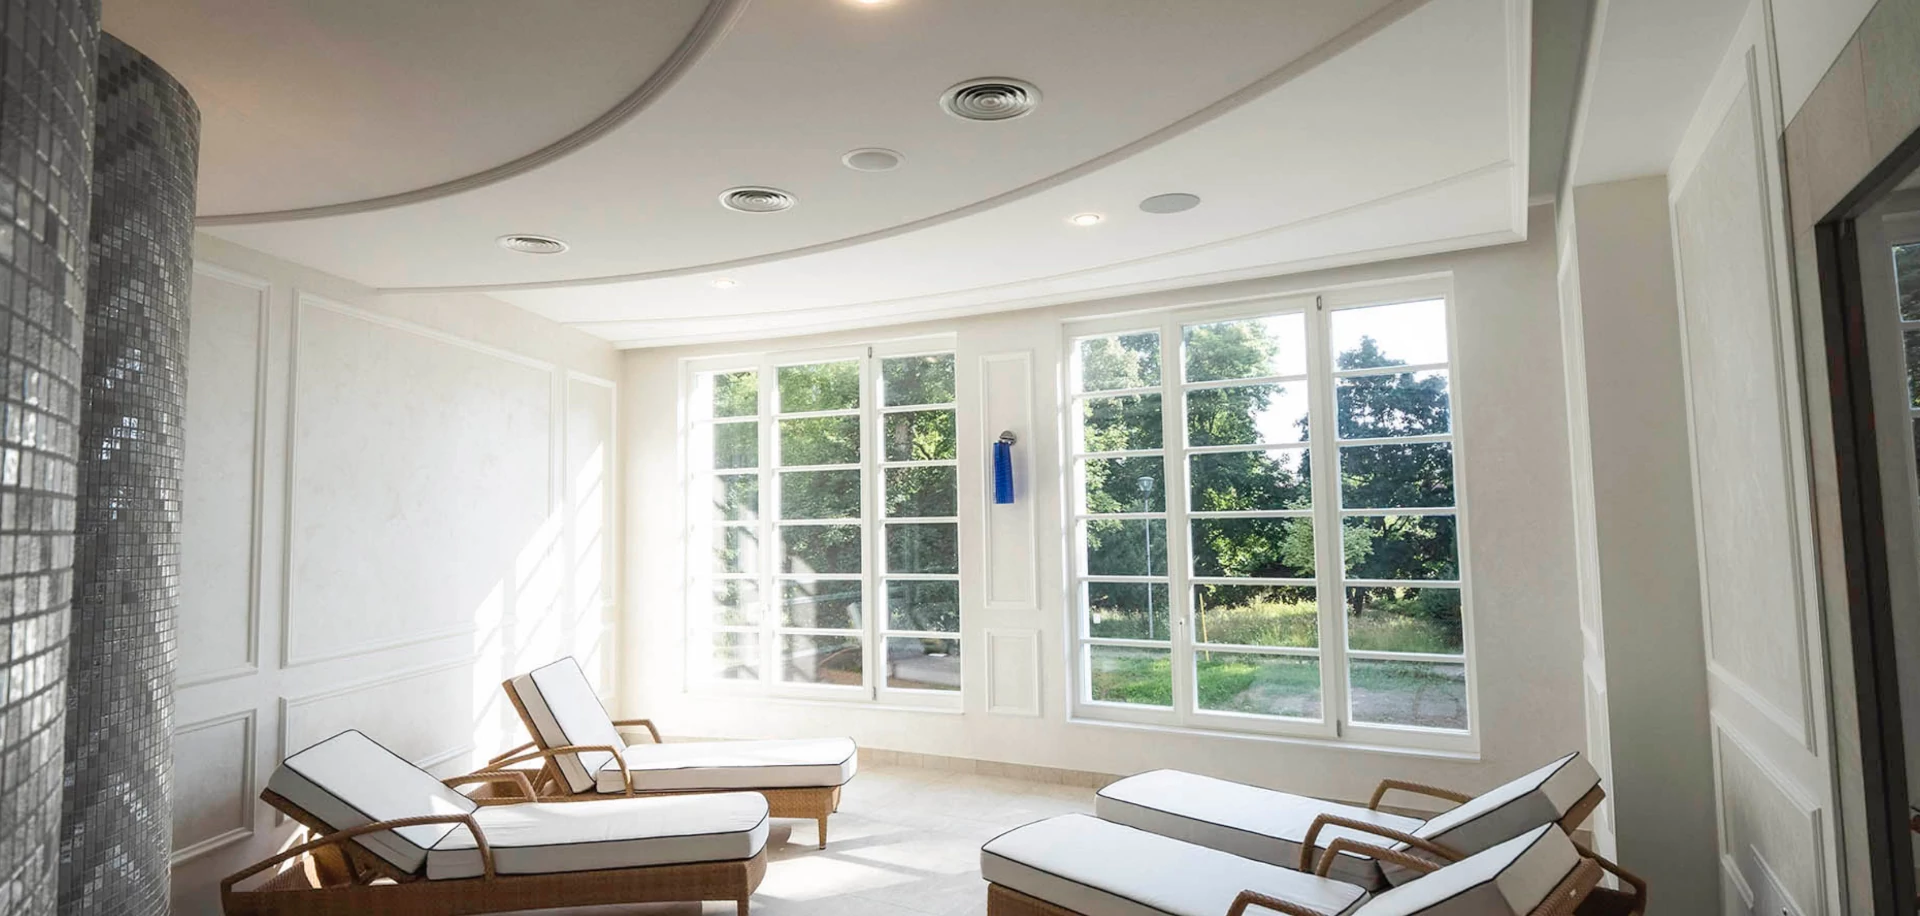 Moderný design sadrokartónových dekoračných stropov a stien